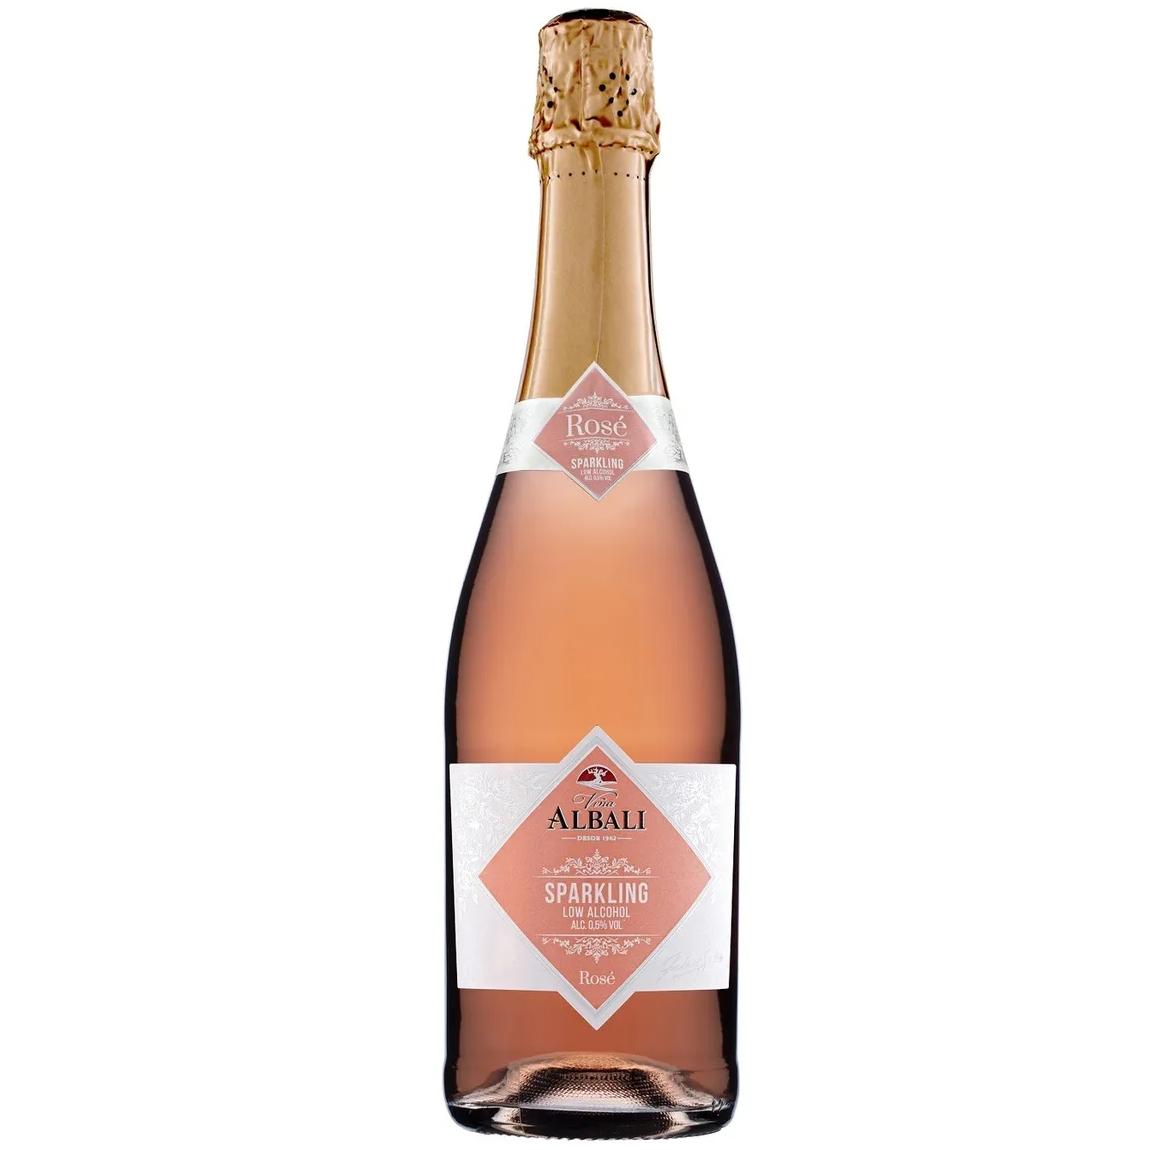 Вино игристое безалкогольное Felix Solis Vina Albali Sparkling Rose, розовое, 0,75 л puerto ventura tempranillo cabernet felix solis